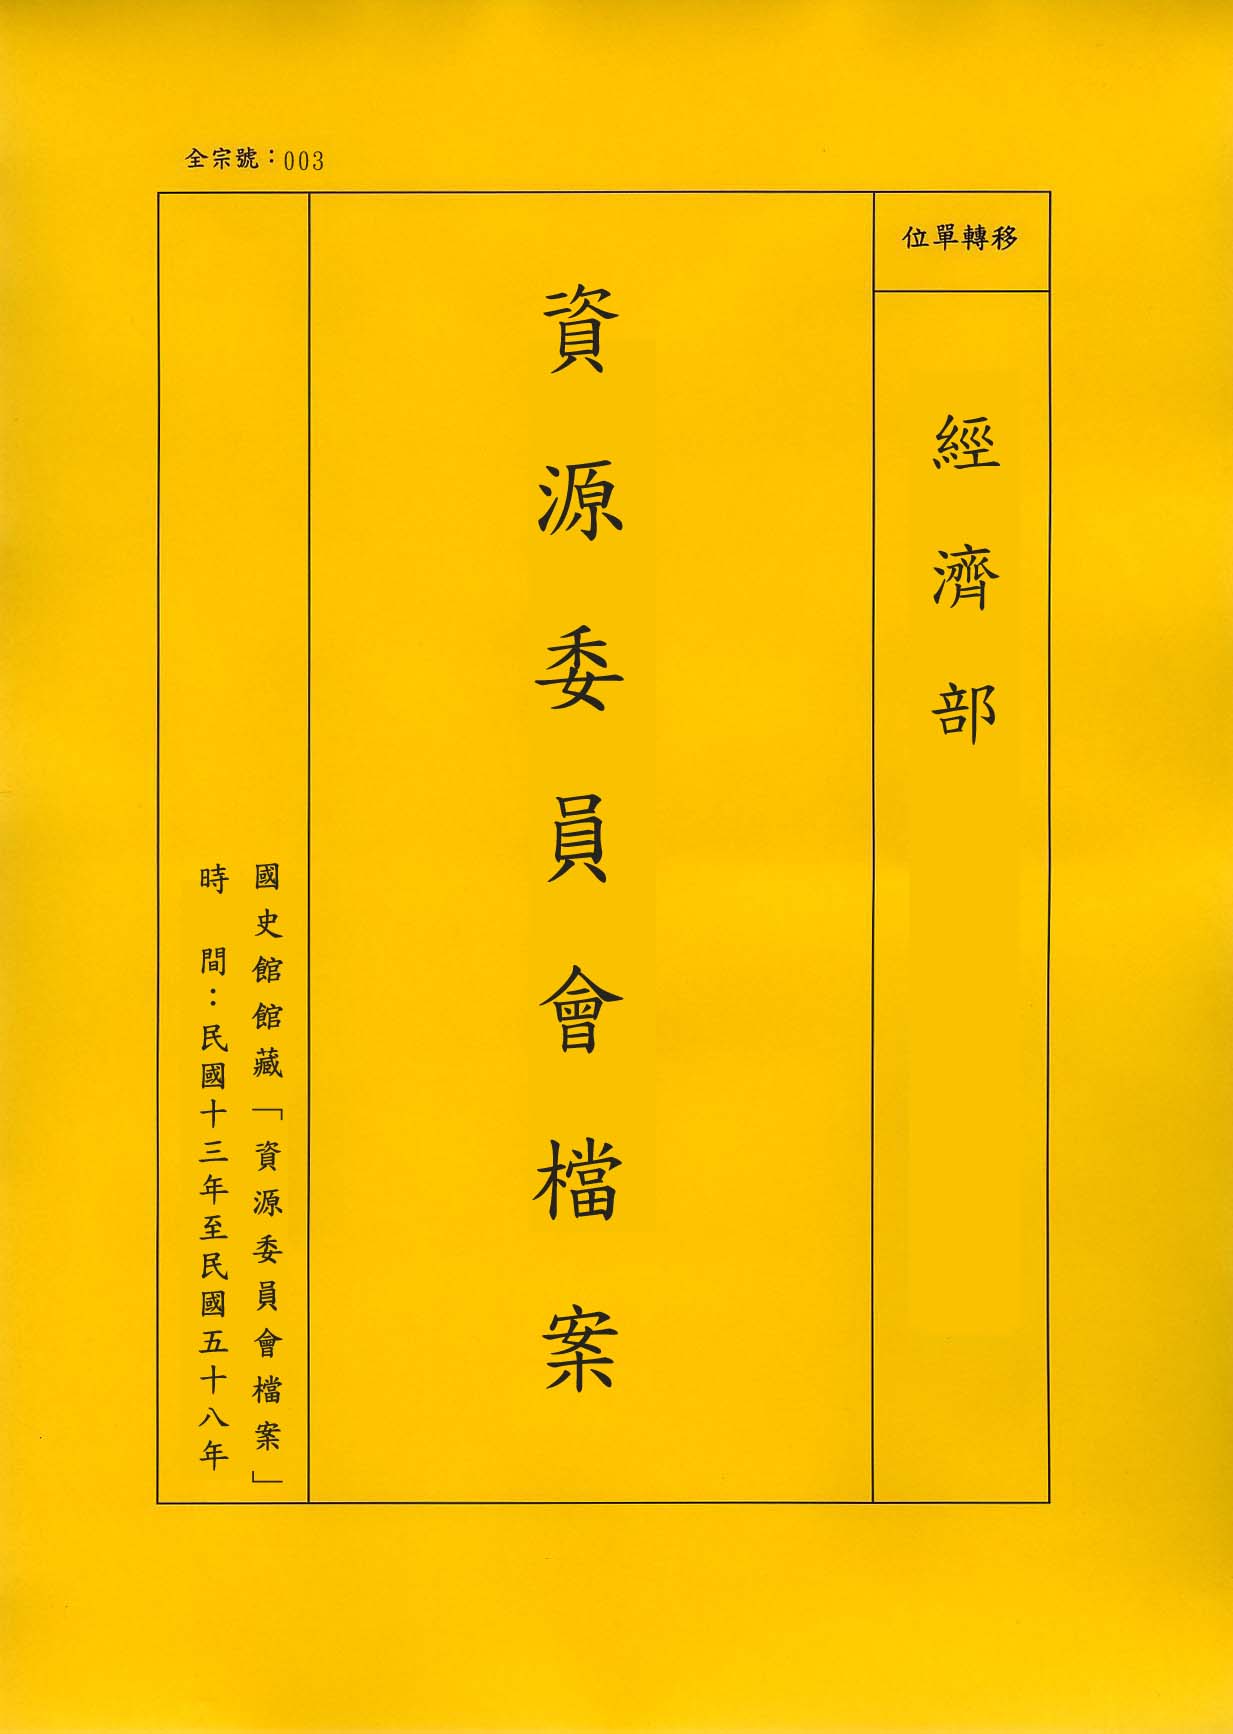 卷名:製革工廠調查表─上海(四)(003-010306-0127)